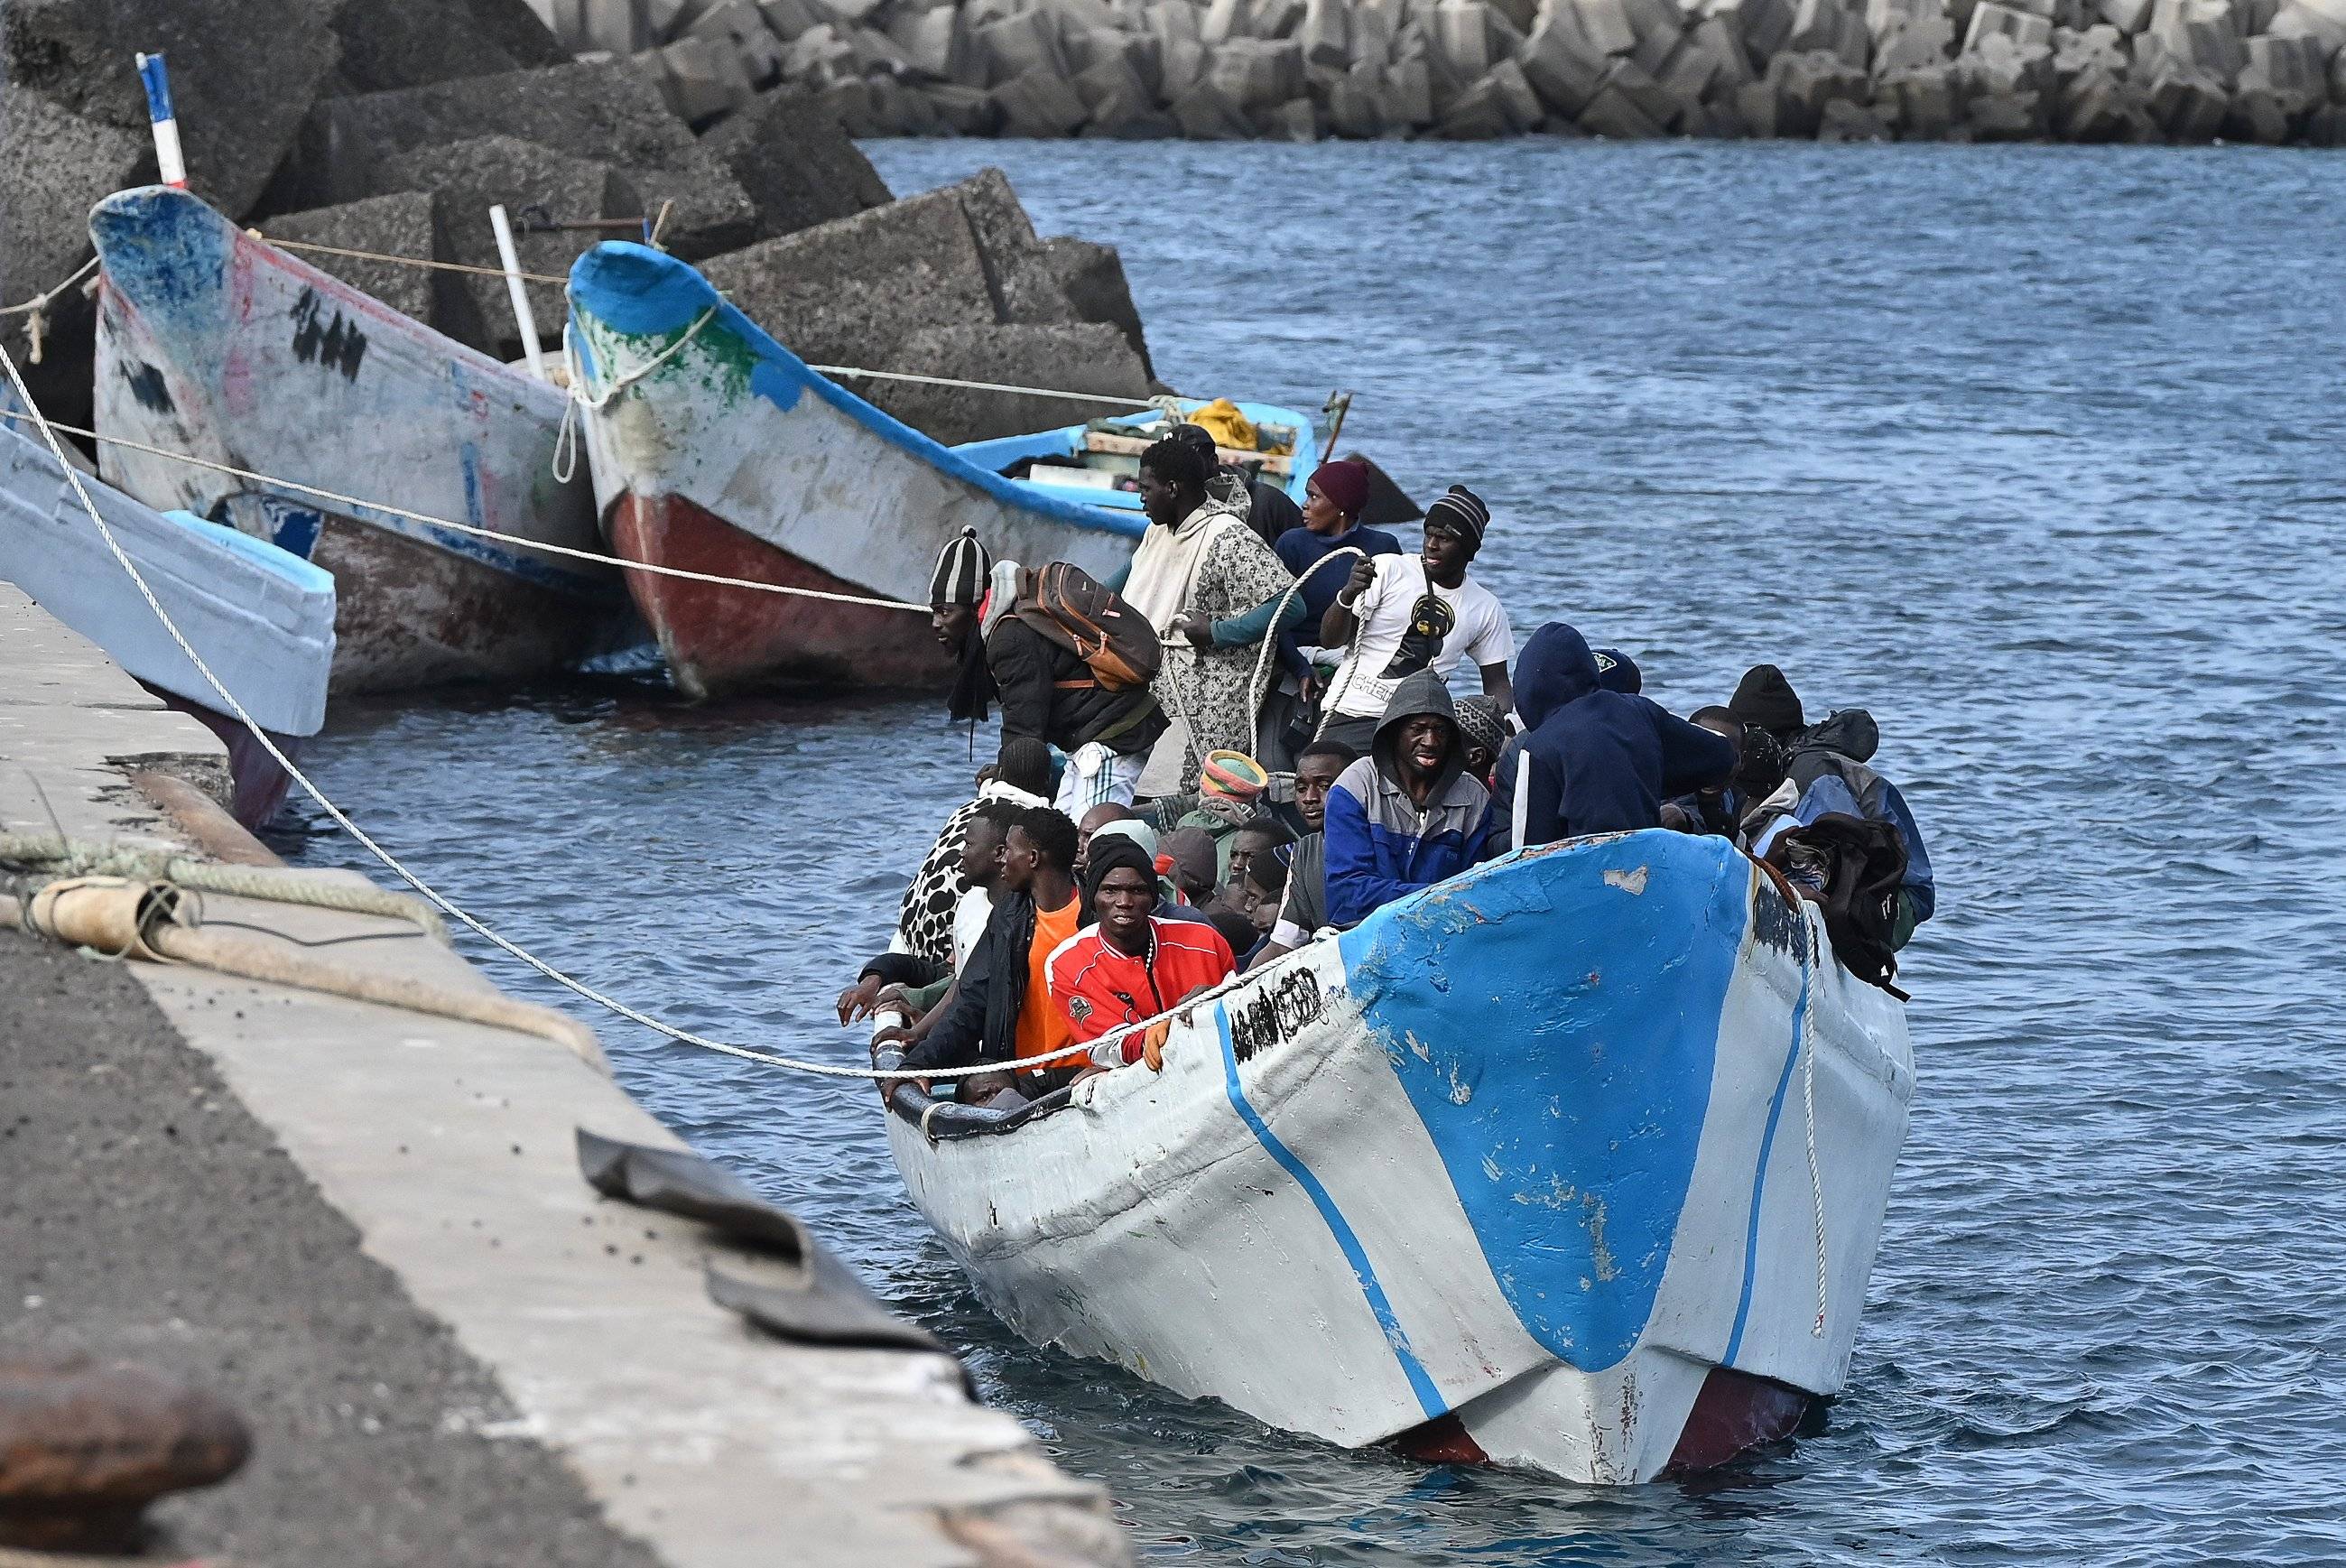 Dobijająca do brzegu łódź pełna migrantów z Afryki. Pakt migracyjny